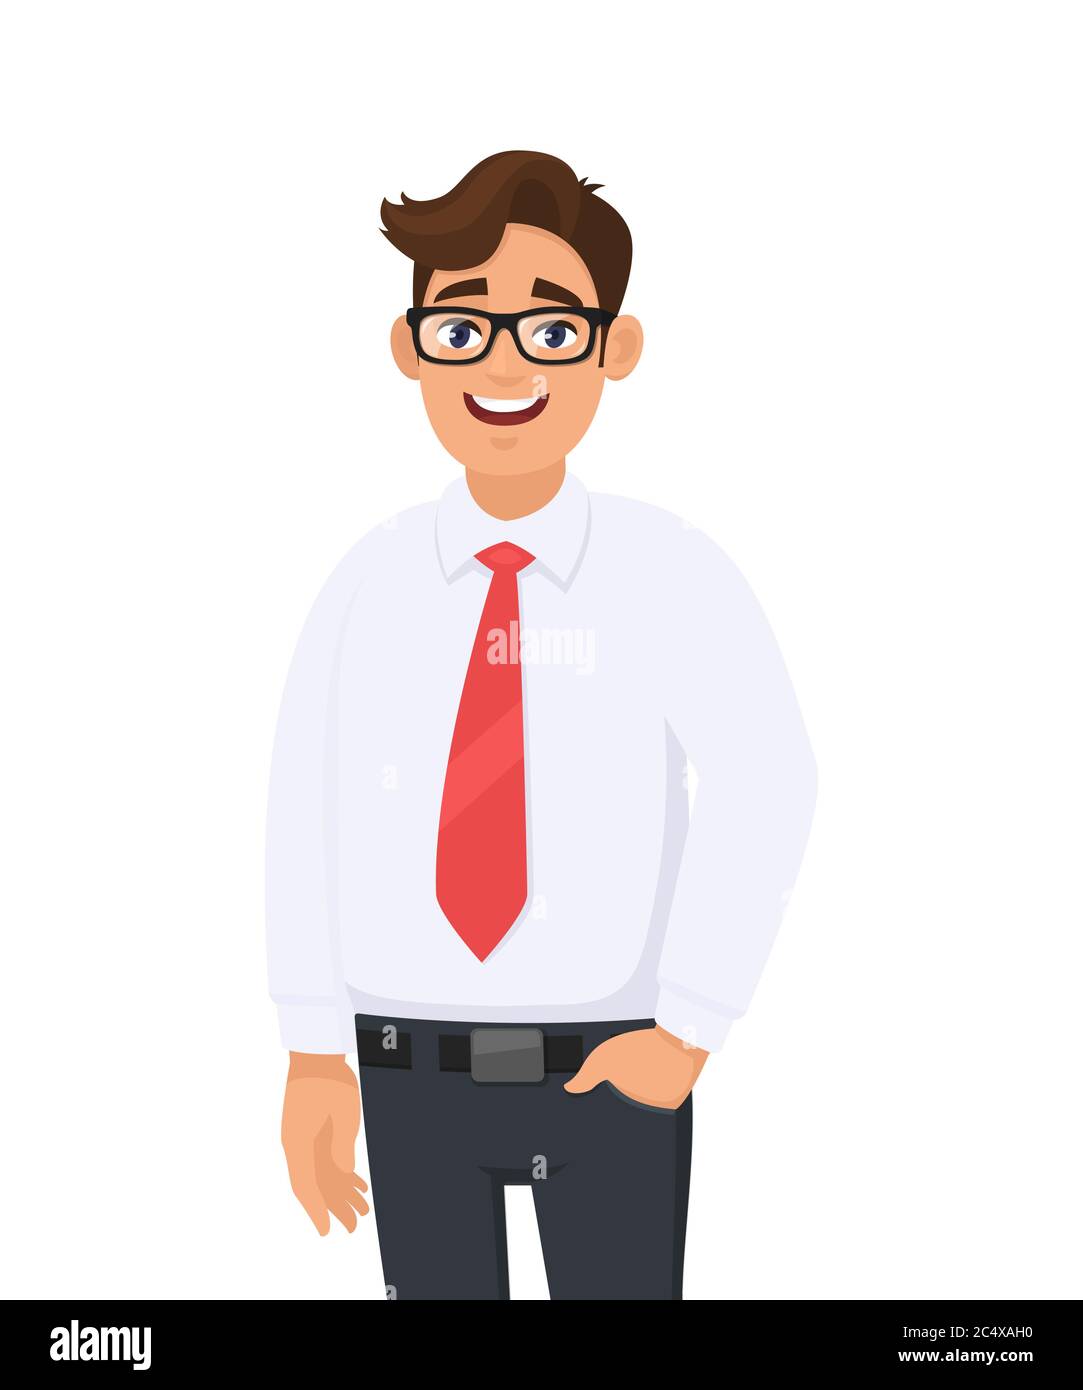 Retrato de un joven hombre de negocios con camisa blanca y corbata roja, en el del pantalón, de pie contra fondo blanco. Emoción humana conc. De hombre de negocios